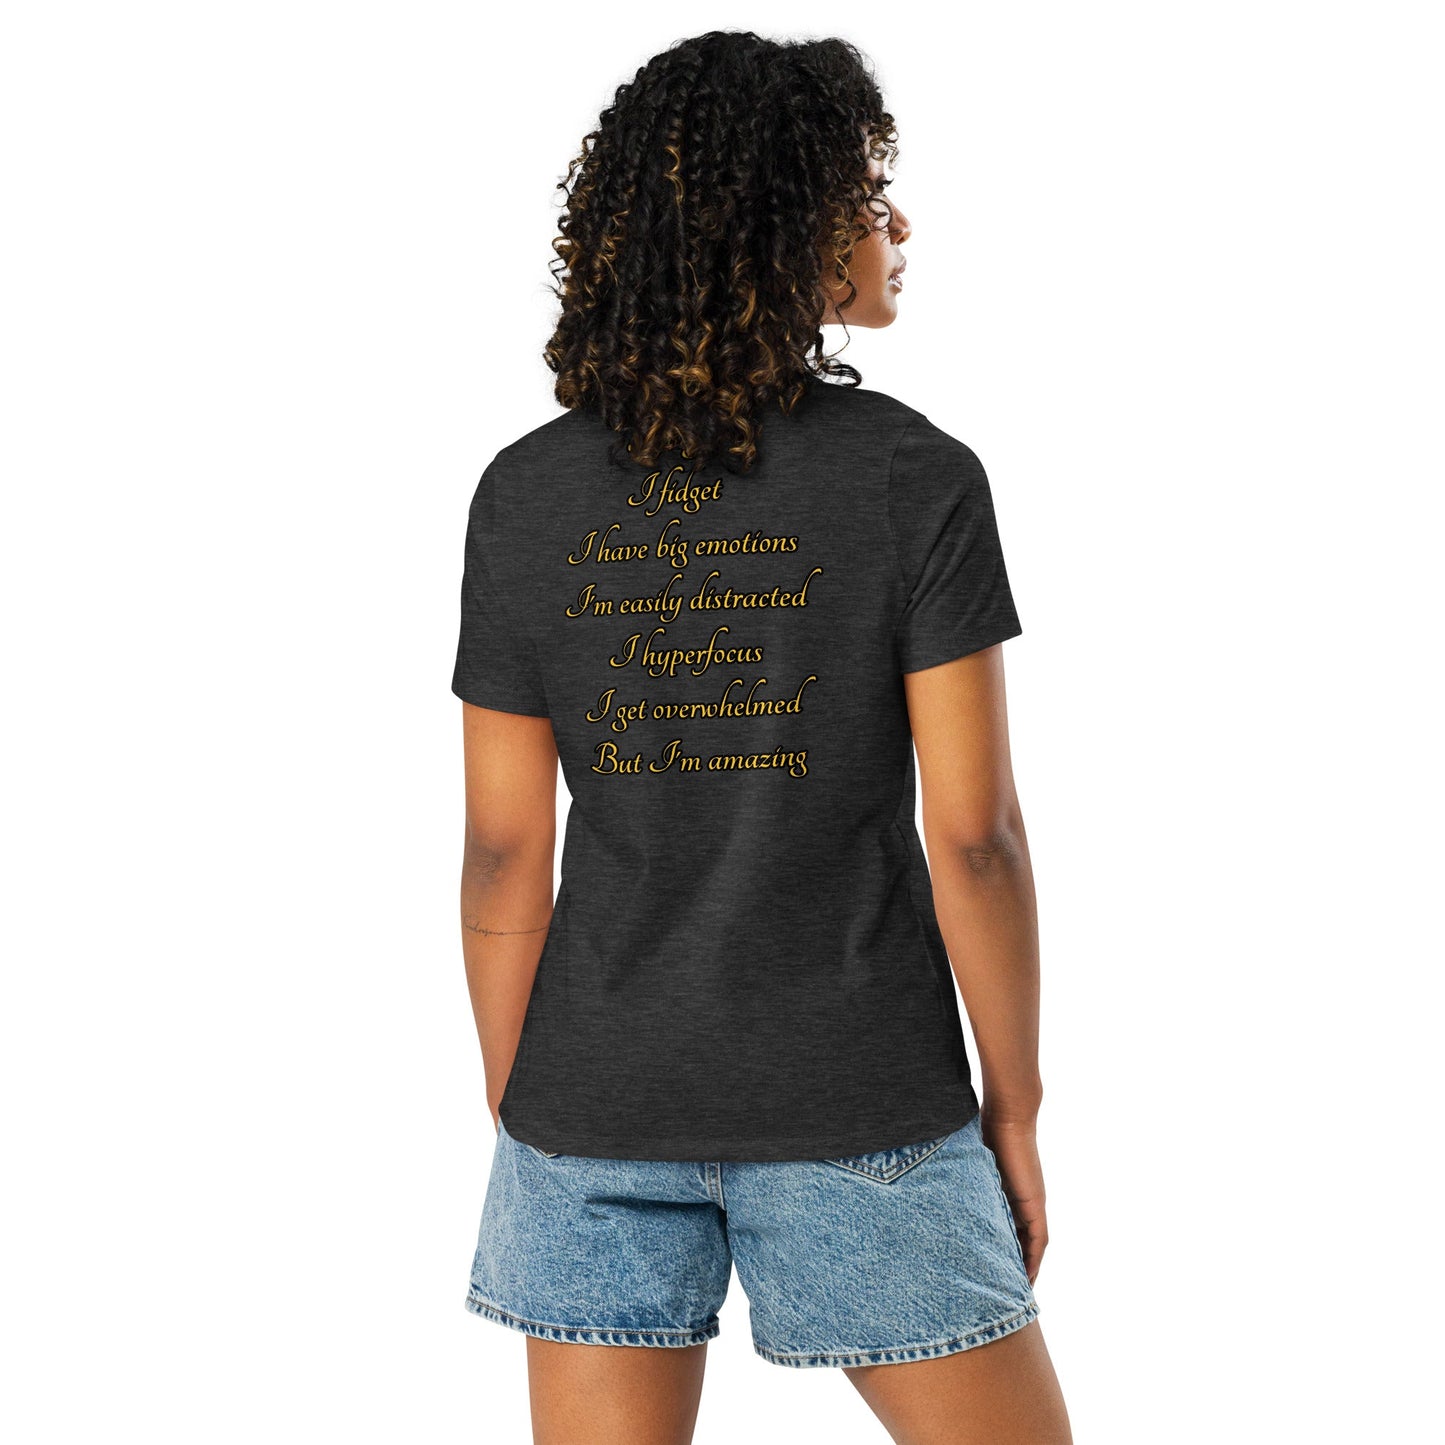 ADHD Warrior Women's Relaxed T-Shirt - Weirdly Sensational